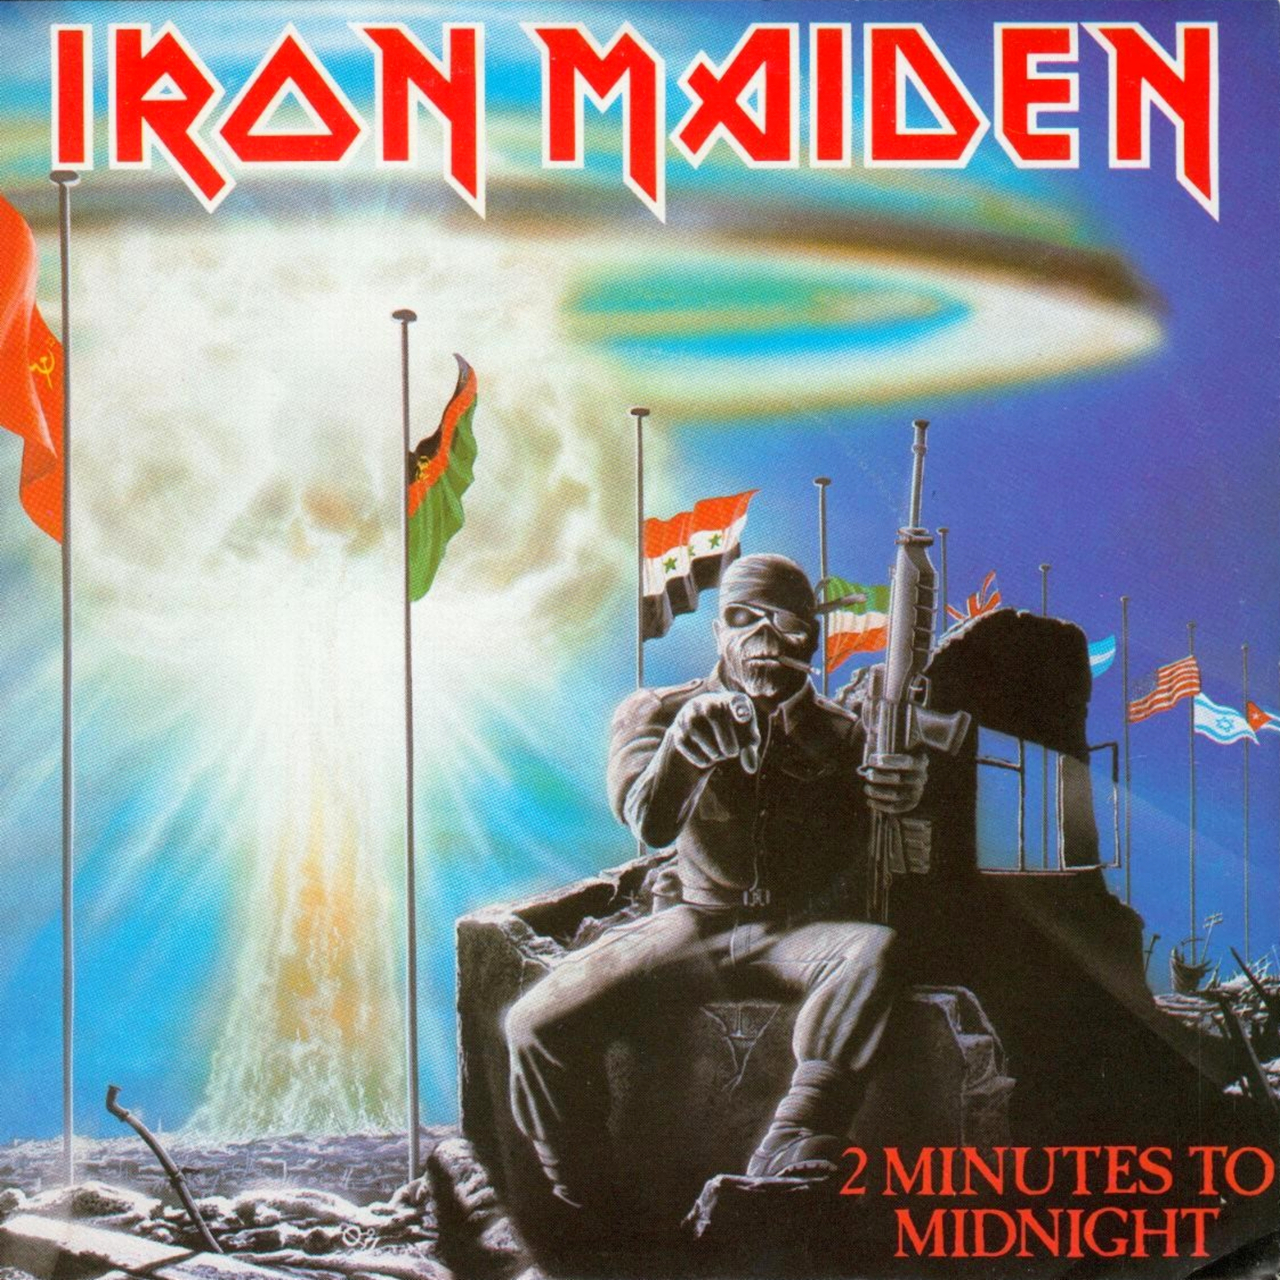 Обложка сингла Two Minutes To Midninght. Винил, 1984. Иллюстрация к песне Two Minutes To Midnight (Две минуты до полуночи) (Iron Maiden)